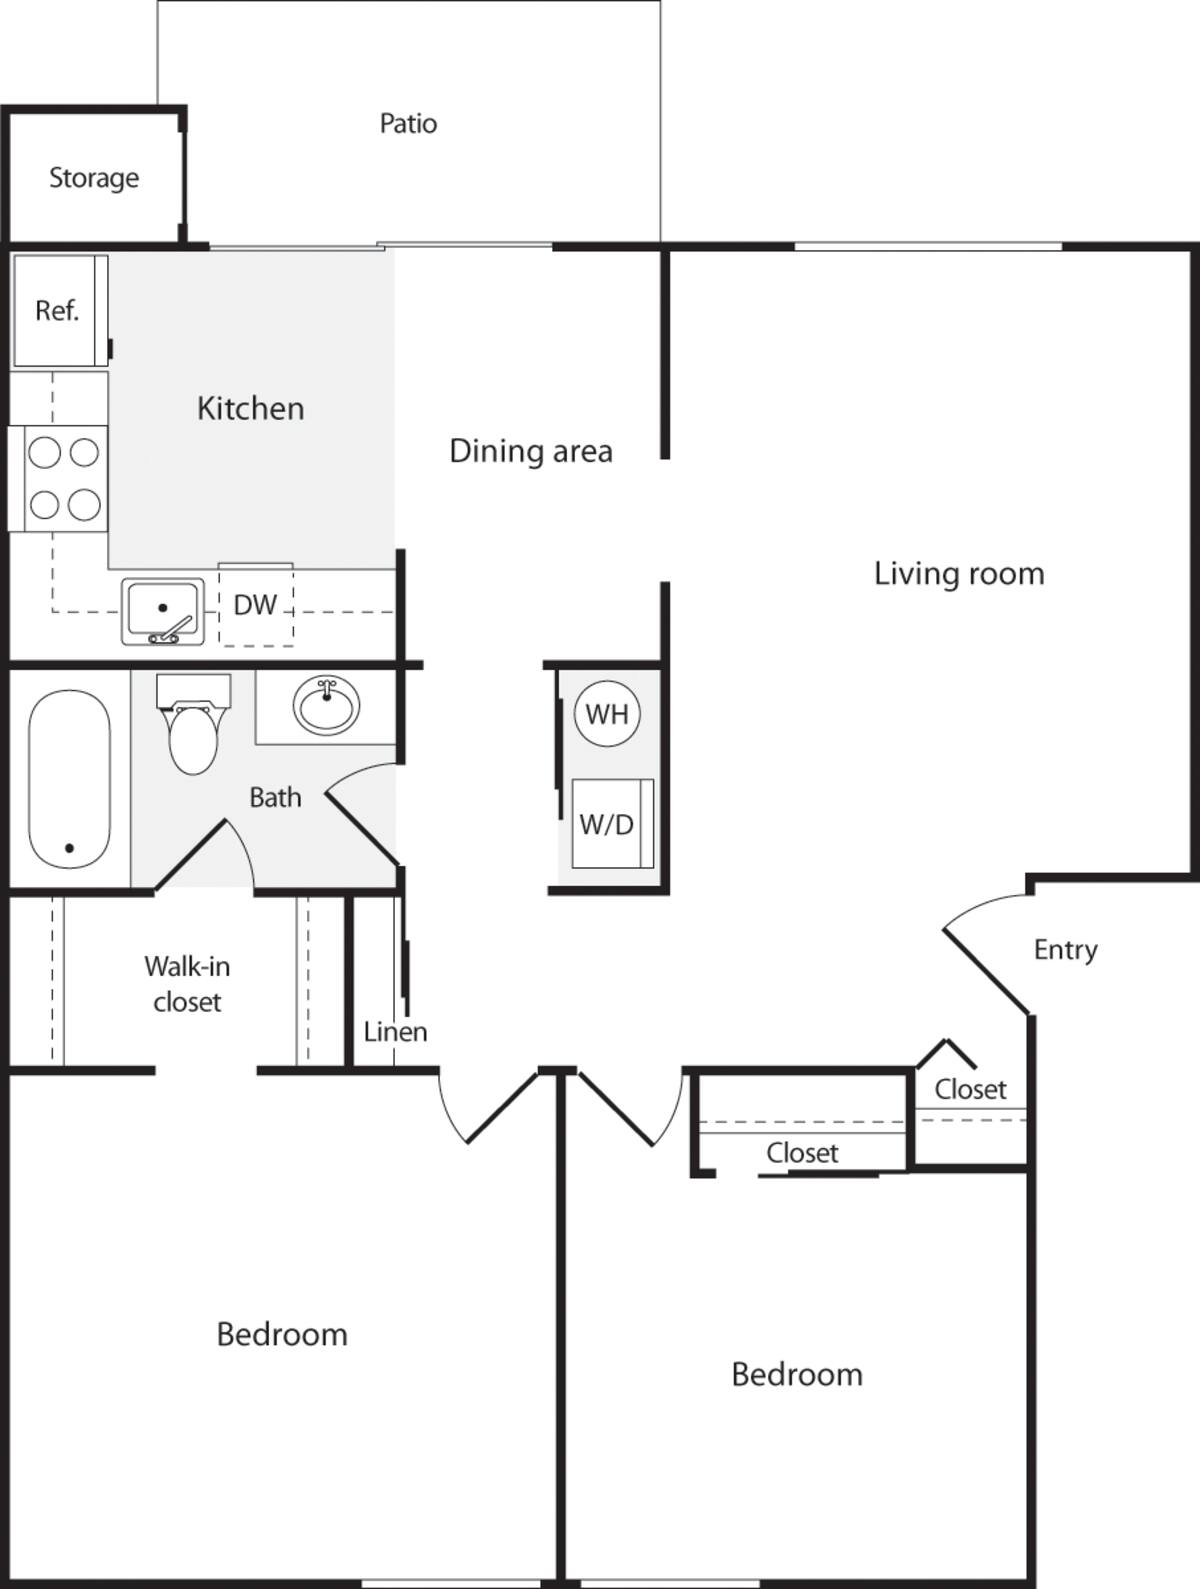 Floorplan diagram for 2 Bedrooms A, showing 2 bedroom